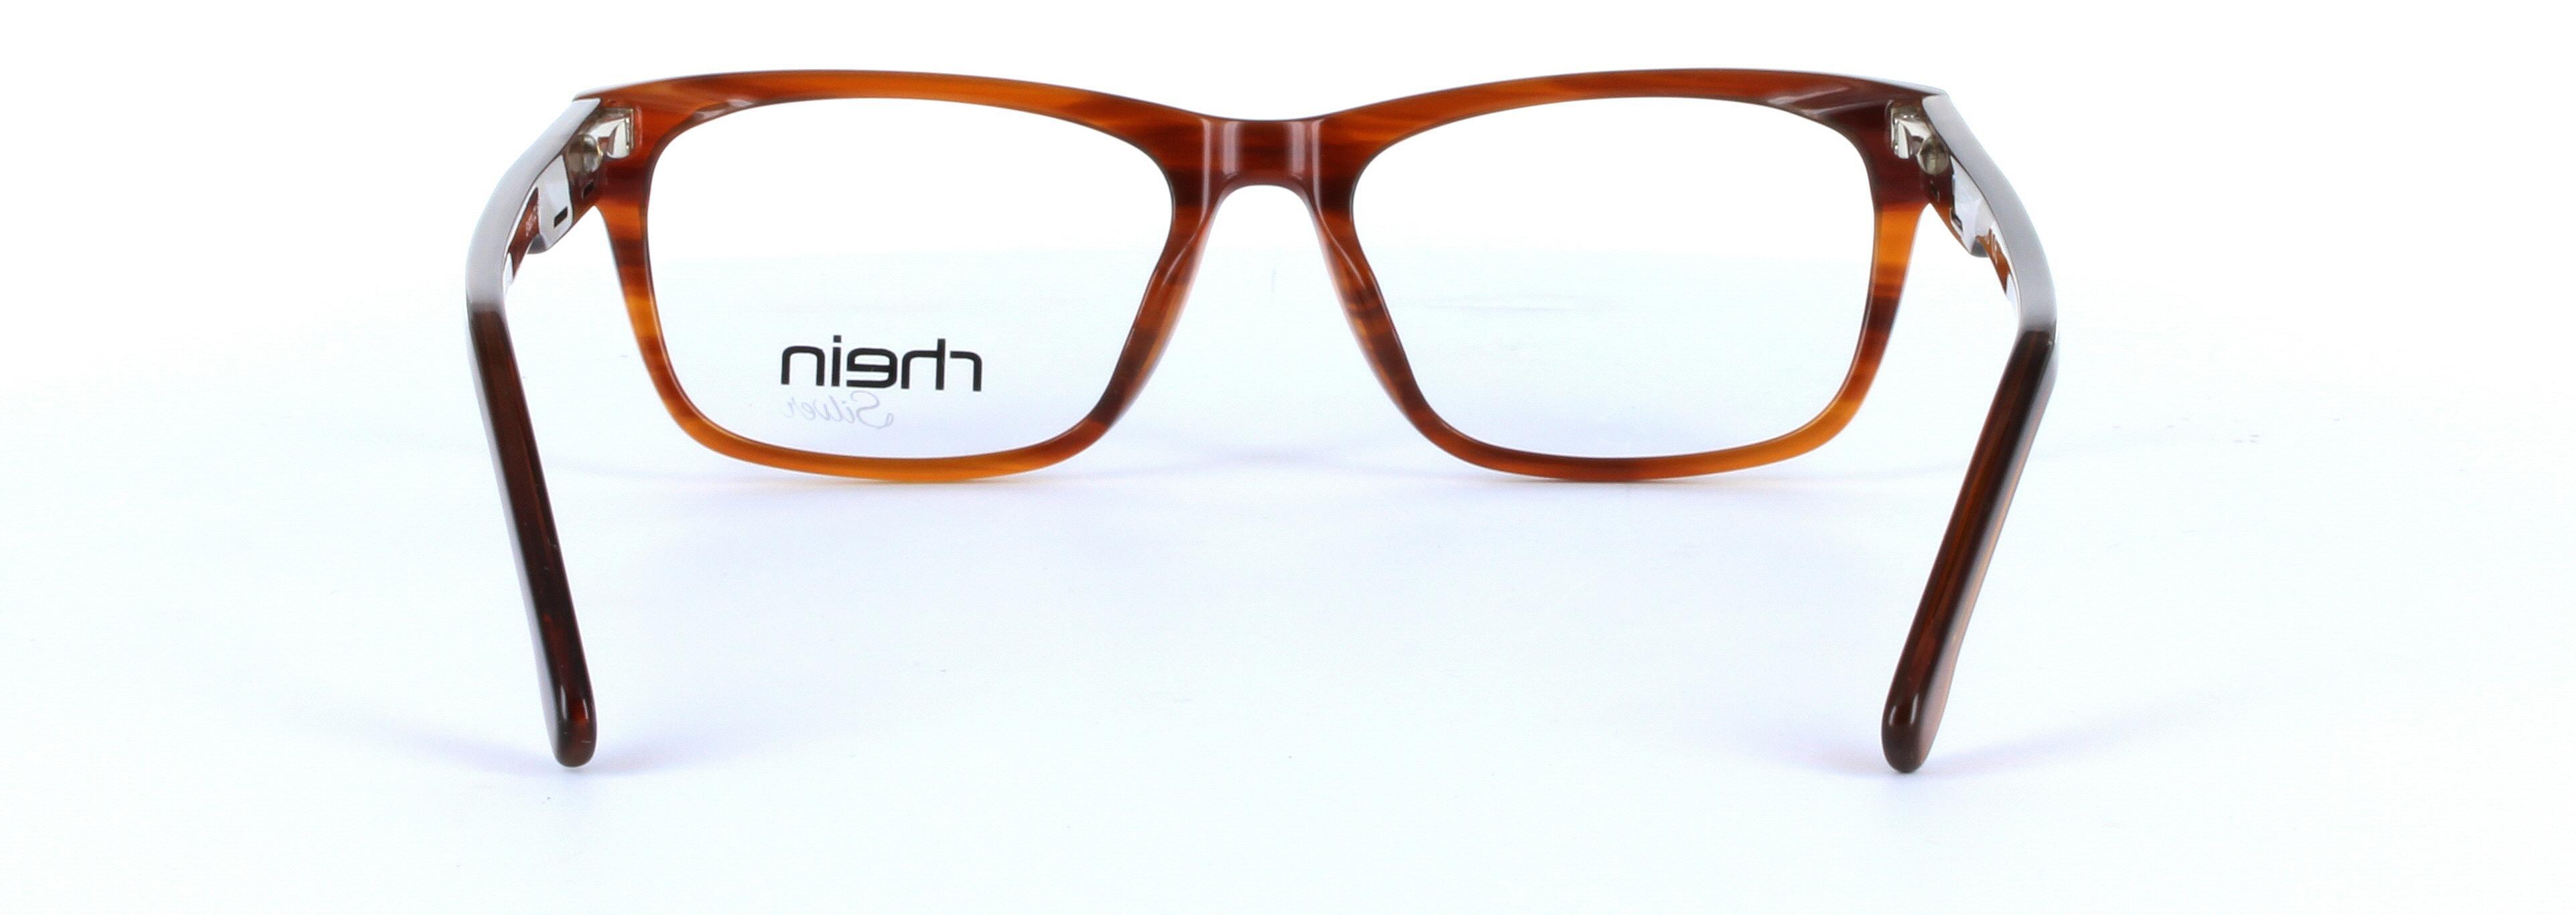 Cygnus Brown Full Rim Rectangular Plastic Glasses - Image View 3